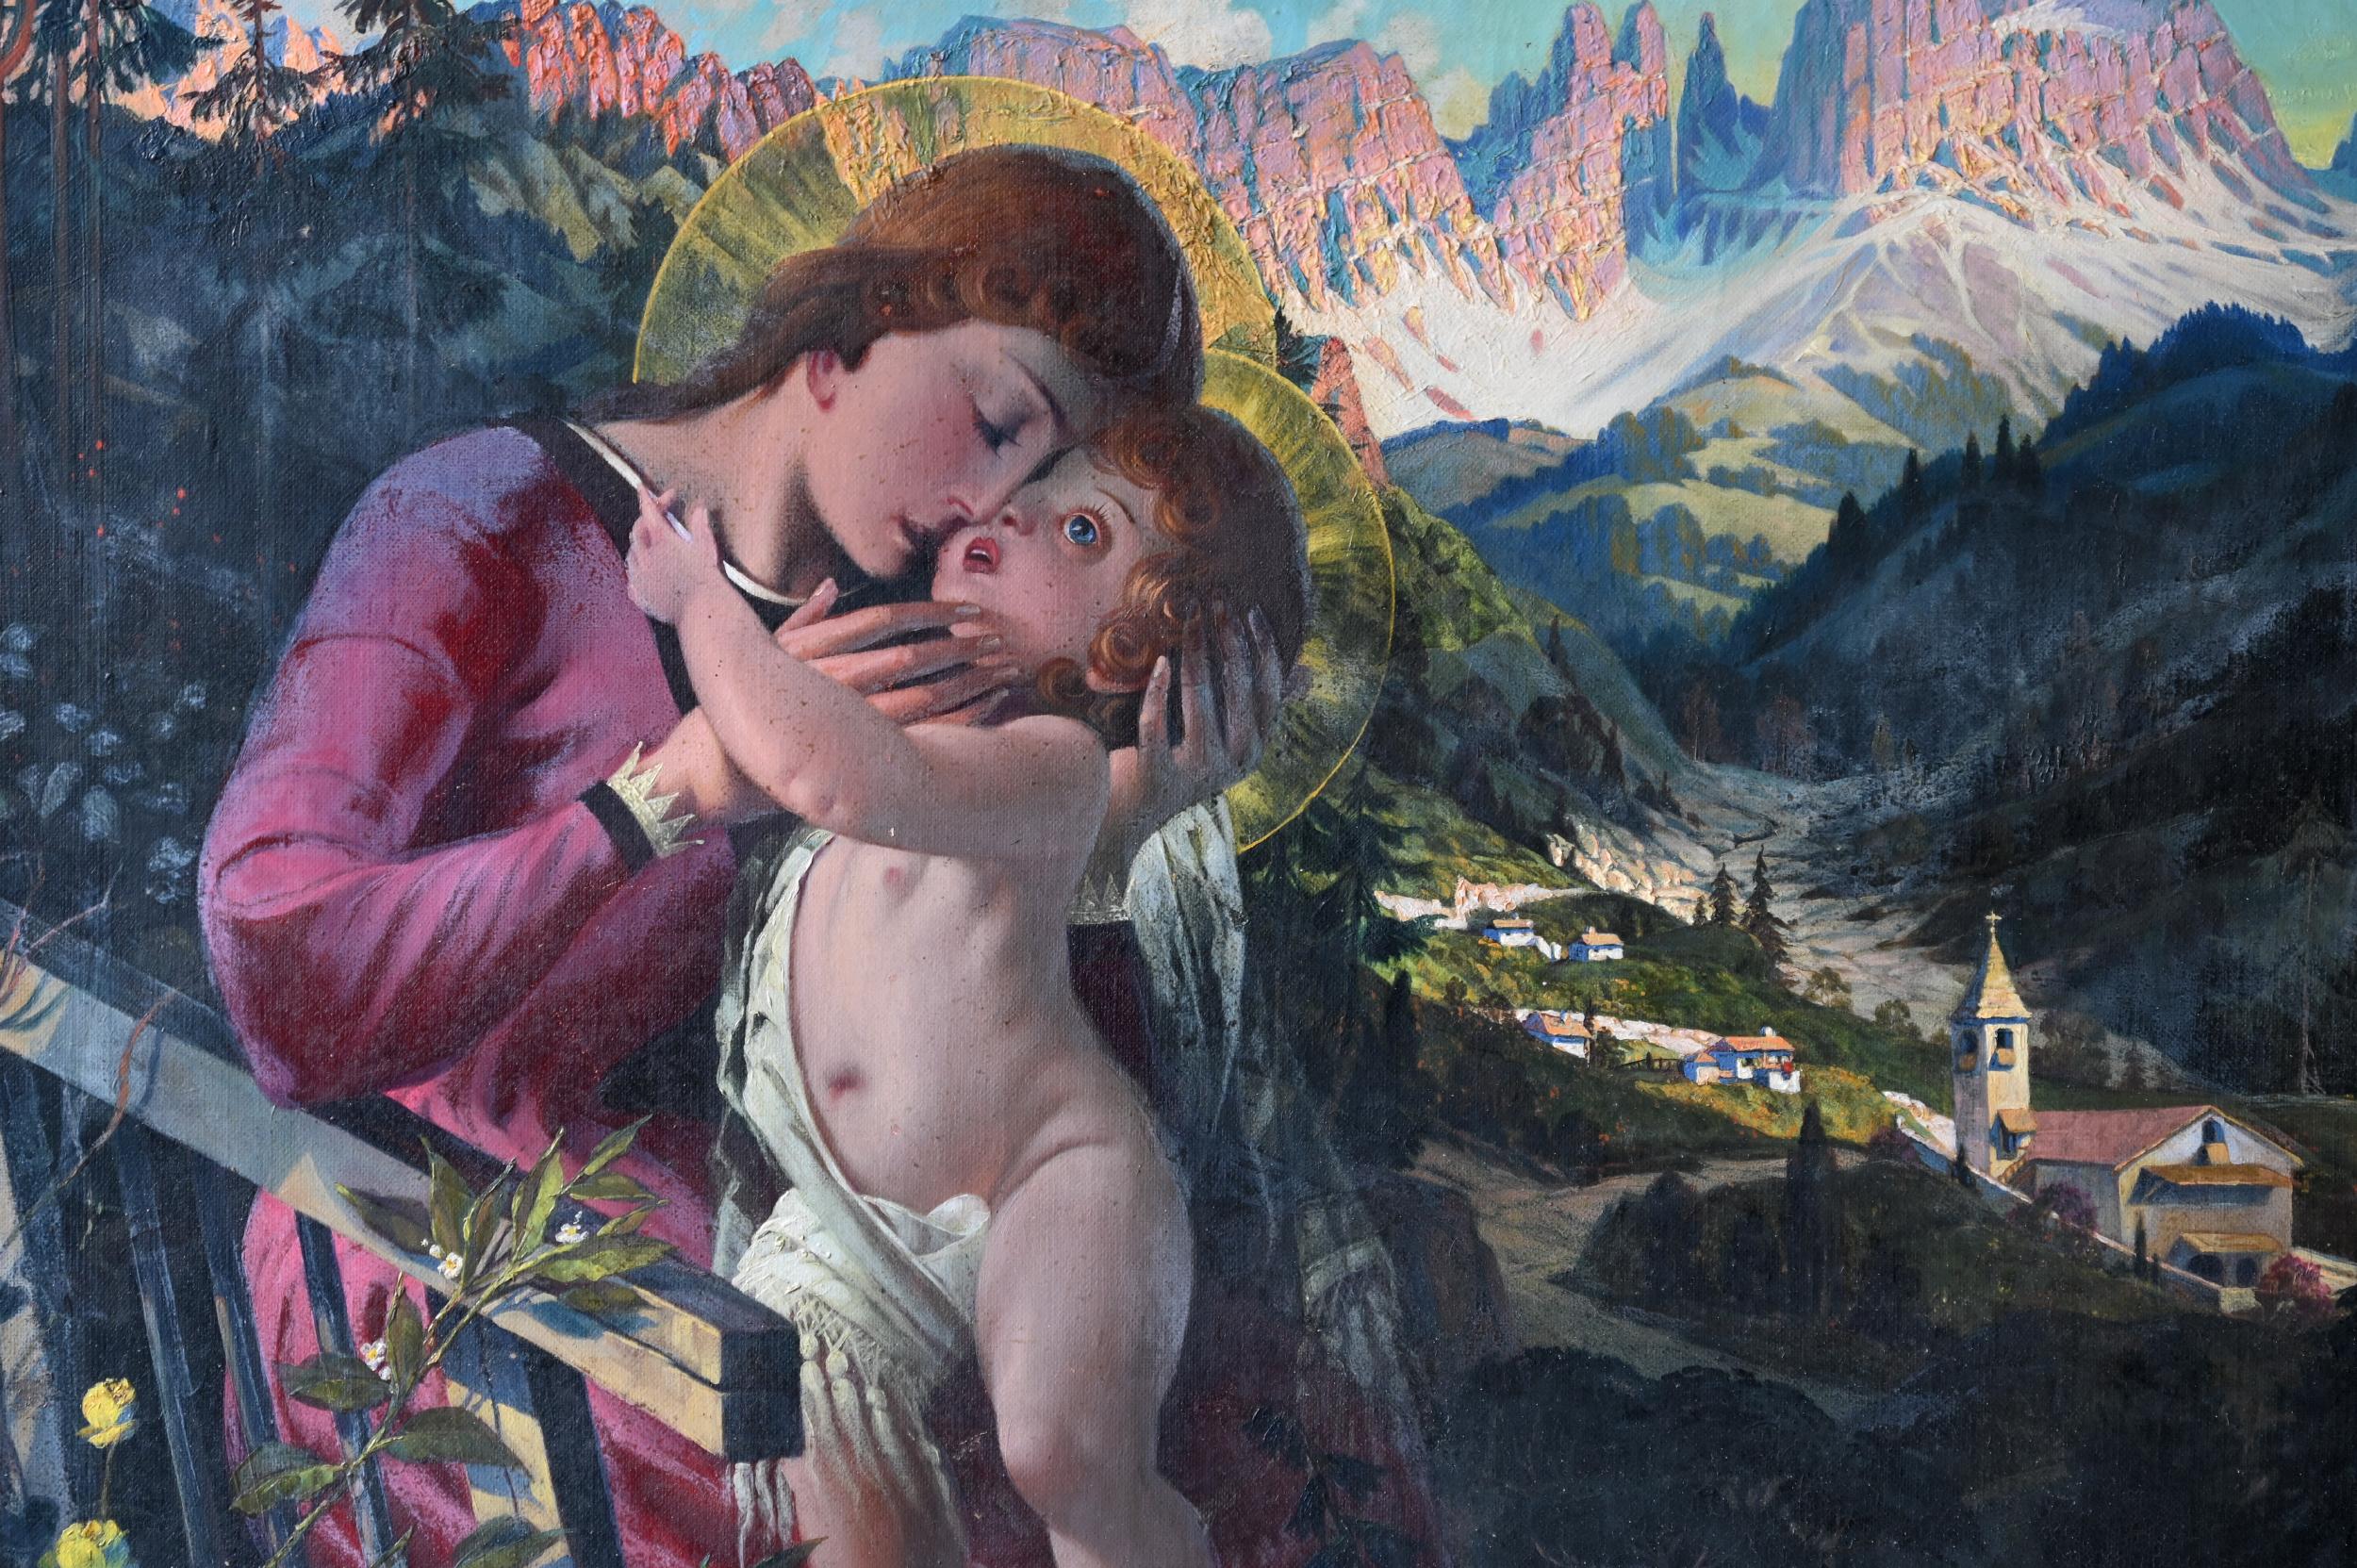 Ein farbenfrohes Ölgemälde, signiert und datiert von dem Münchner Maler
J.F. Bender. Die innige Umarmung Marias mit Ihrem Sohn Jesus ist von großer Liebe und Fürsorge für den kleinen Sohn geprägt. Die beiden sitzen auf einer Bank inmitten einer